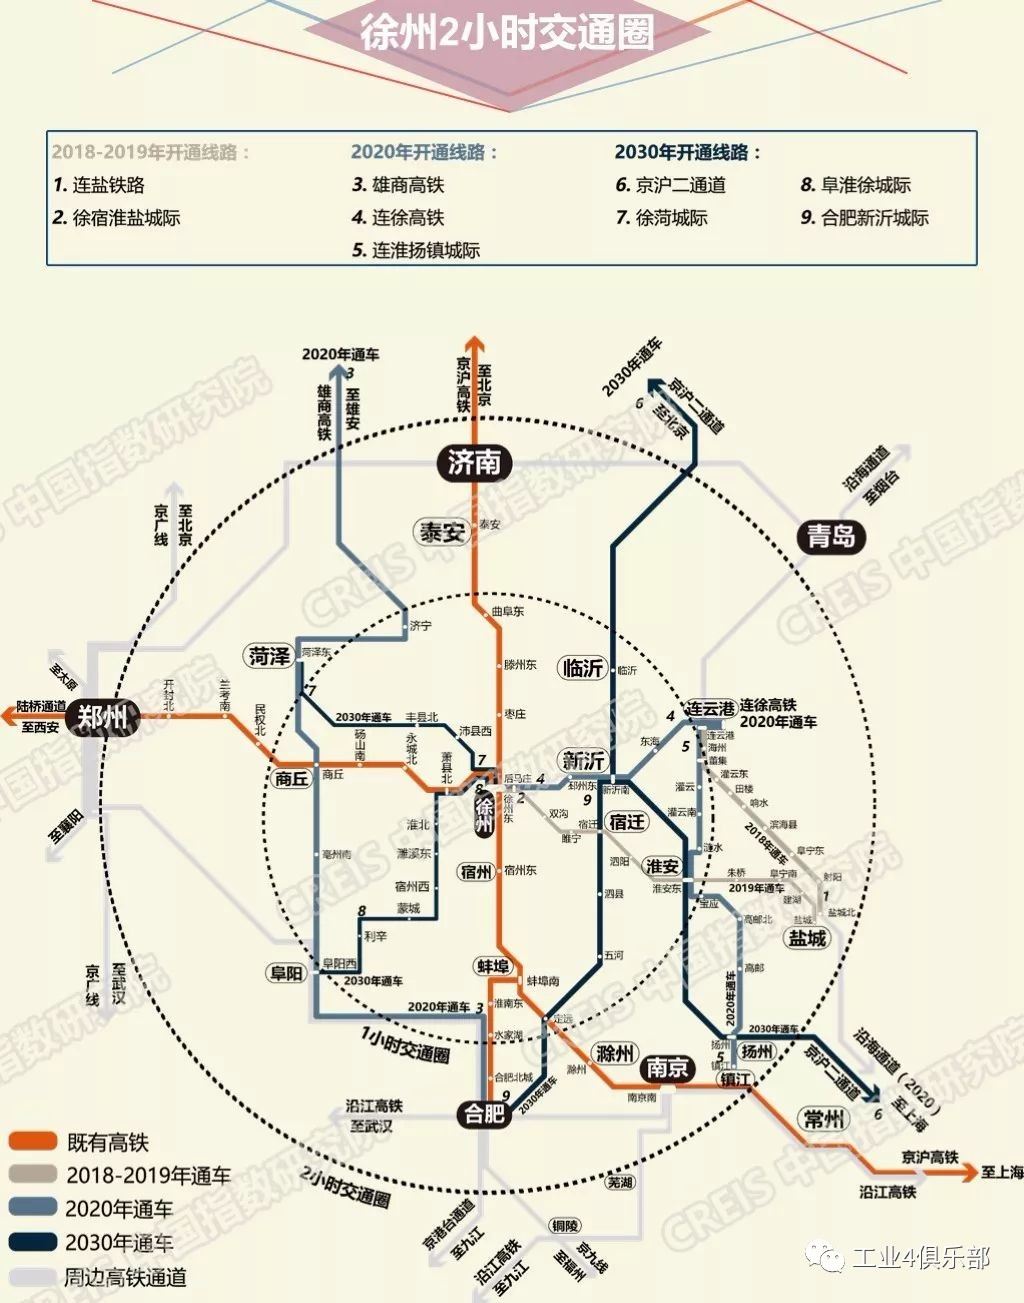 中国高铁的巨变_中国高铁的发展历程